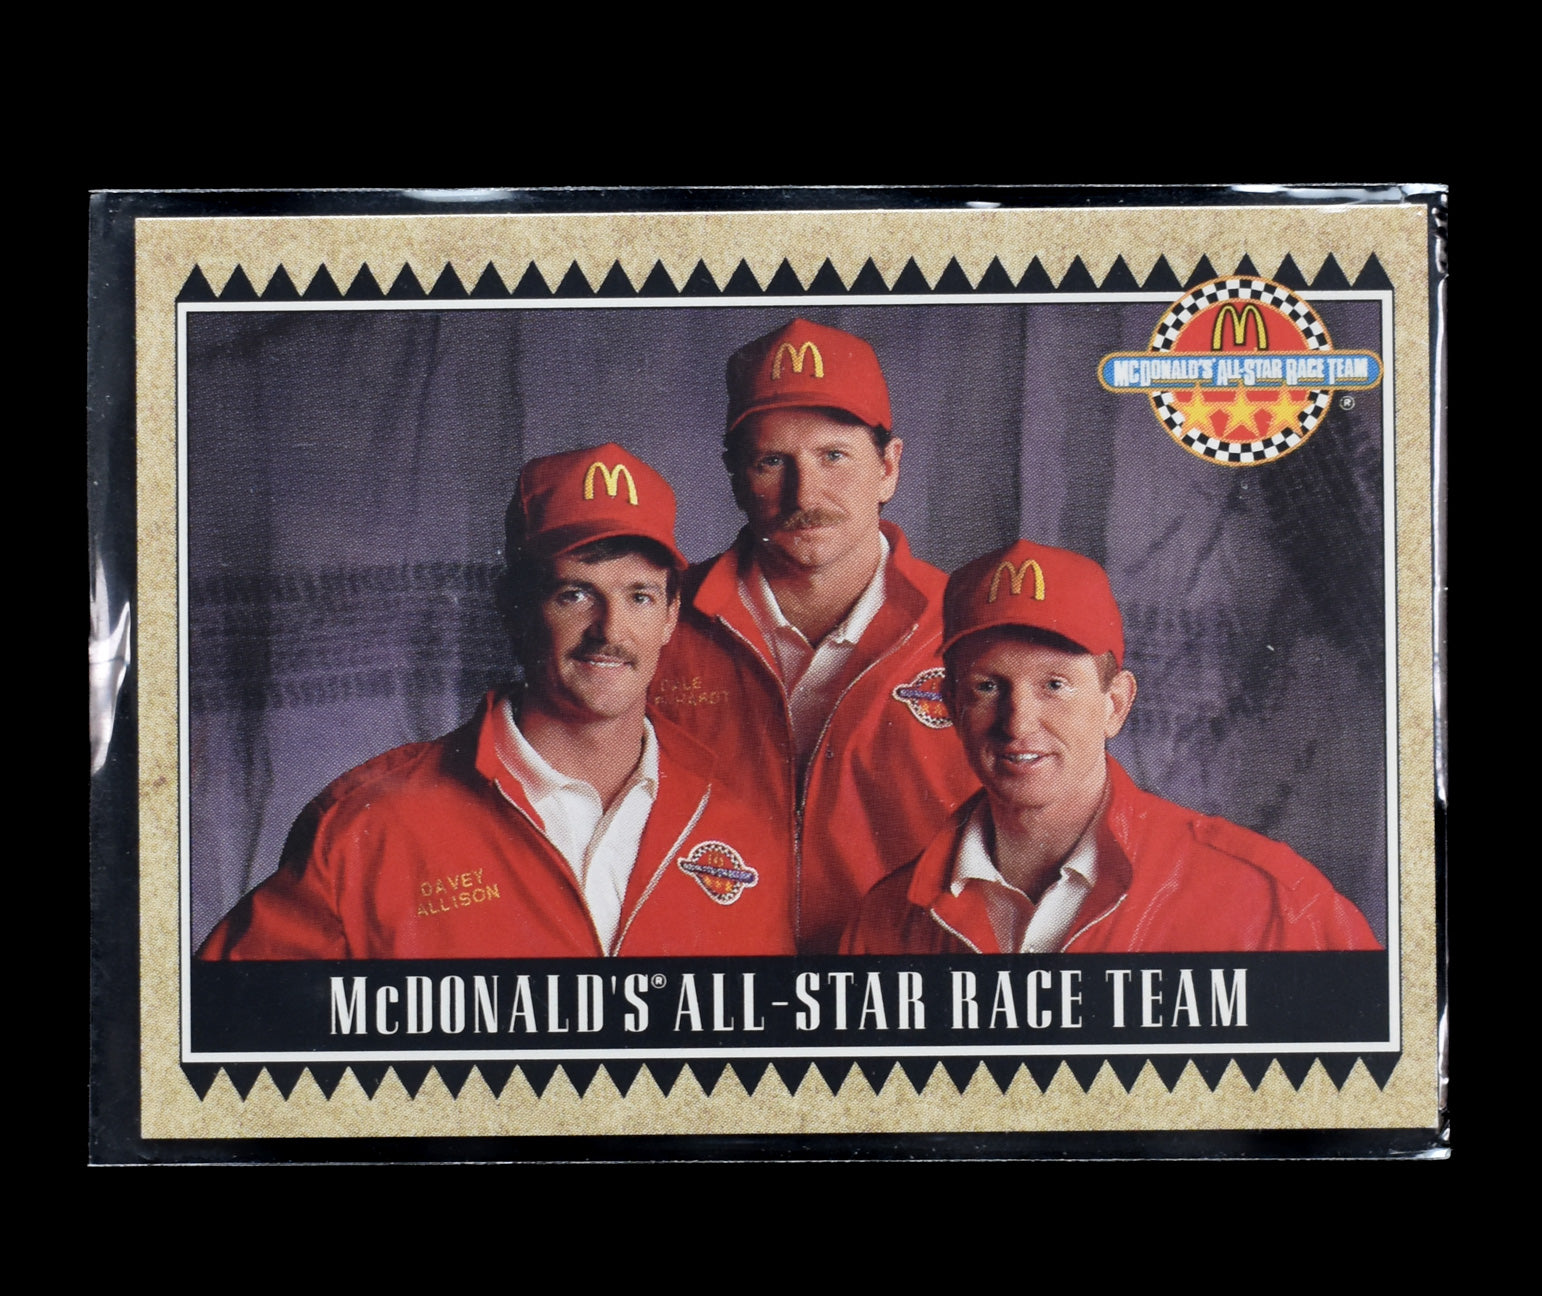 1992 Maxx Racing McDonalds All Star Race Team Card Earnhardt Allison Elliot #1